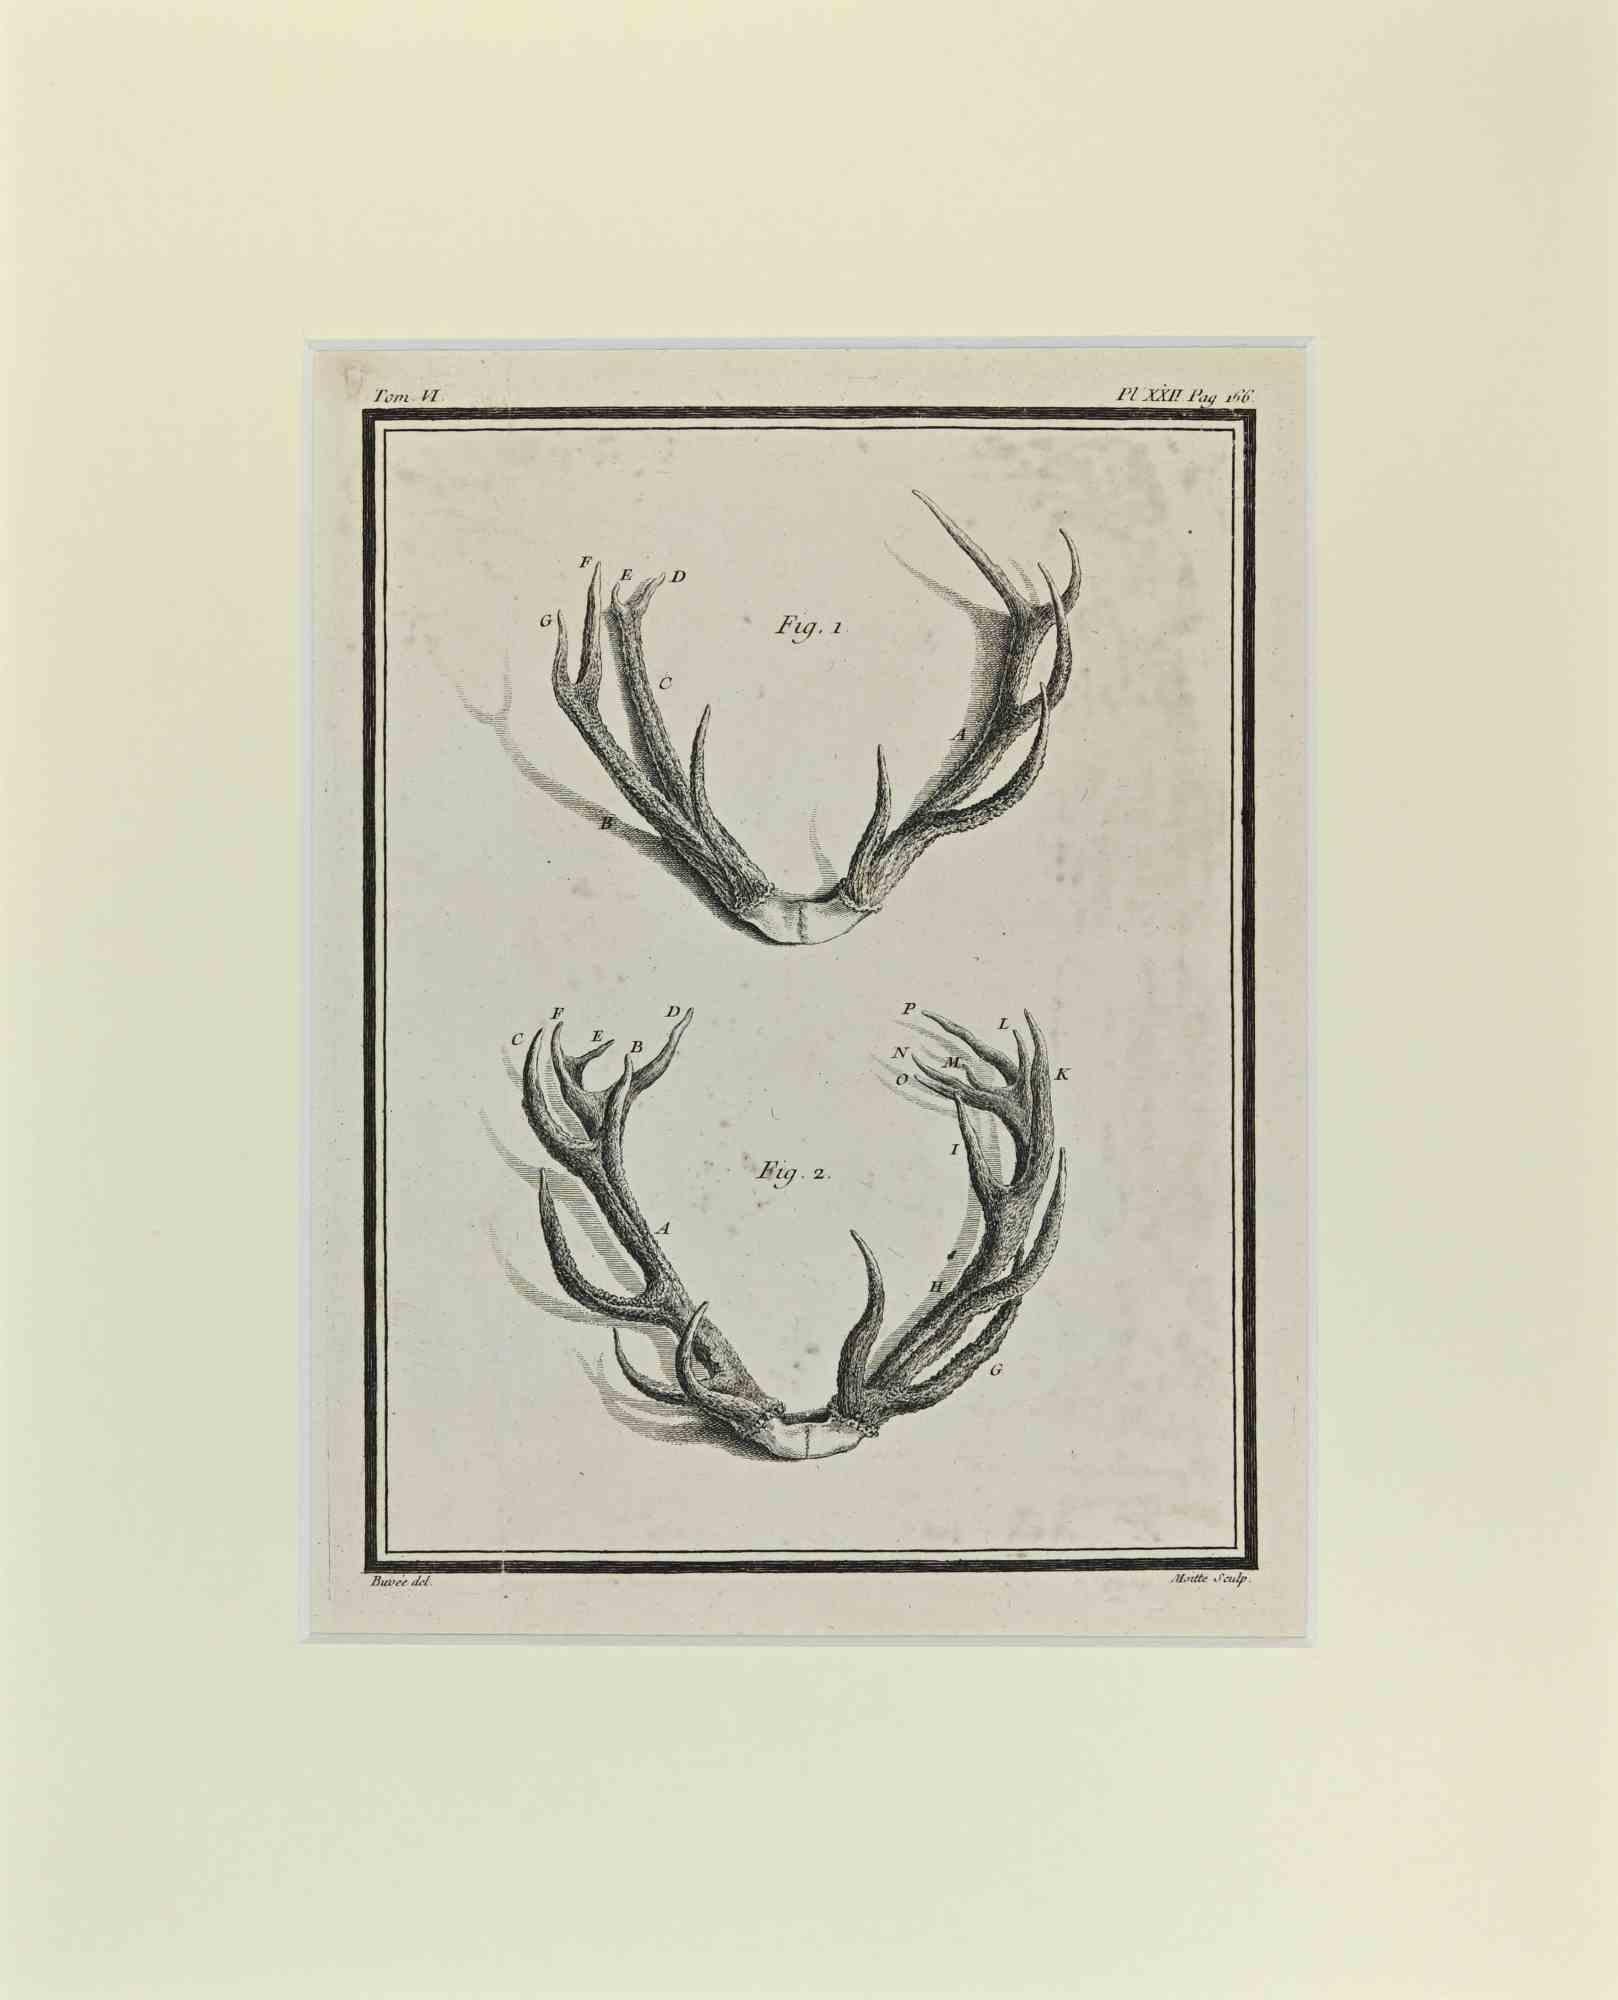 Cornamentas est une œuvre d'art réalisée par Buvée l'Américain en 1771.  

Gravure à l'eau-forte B./W. sur papier ivoire. Signé sur la plaque dans la marge inférieure gauche.

L'œuvre est collée sur du carton. Dimensions totales : 35x28